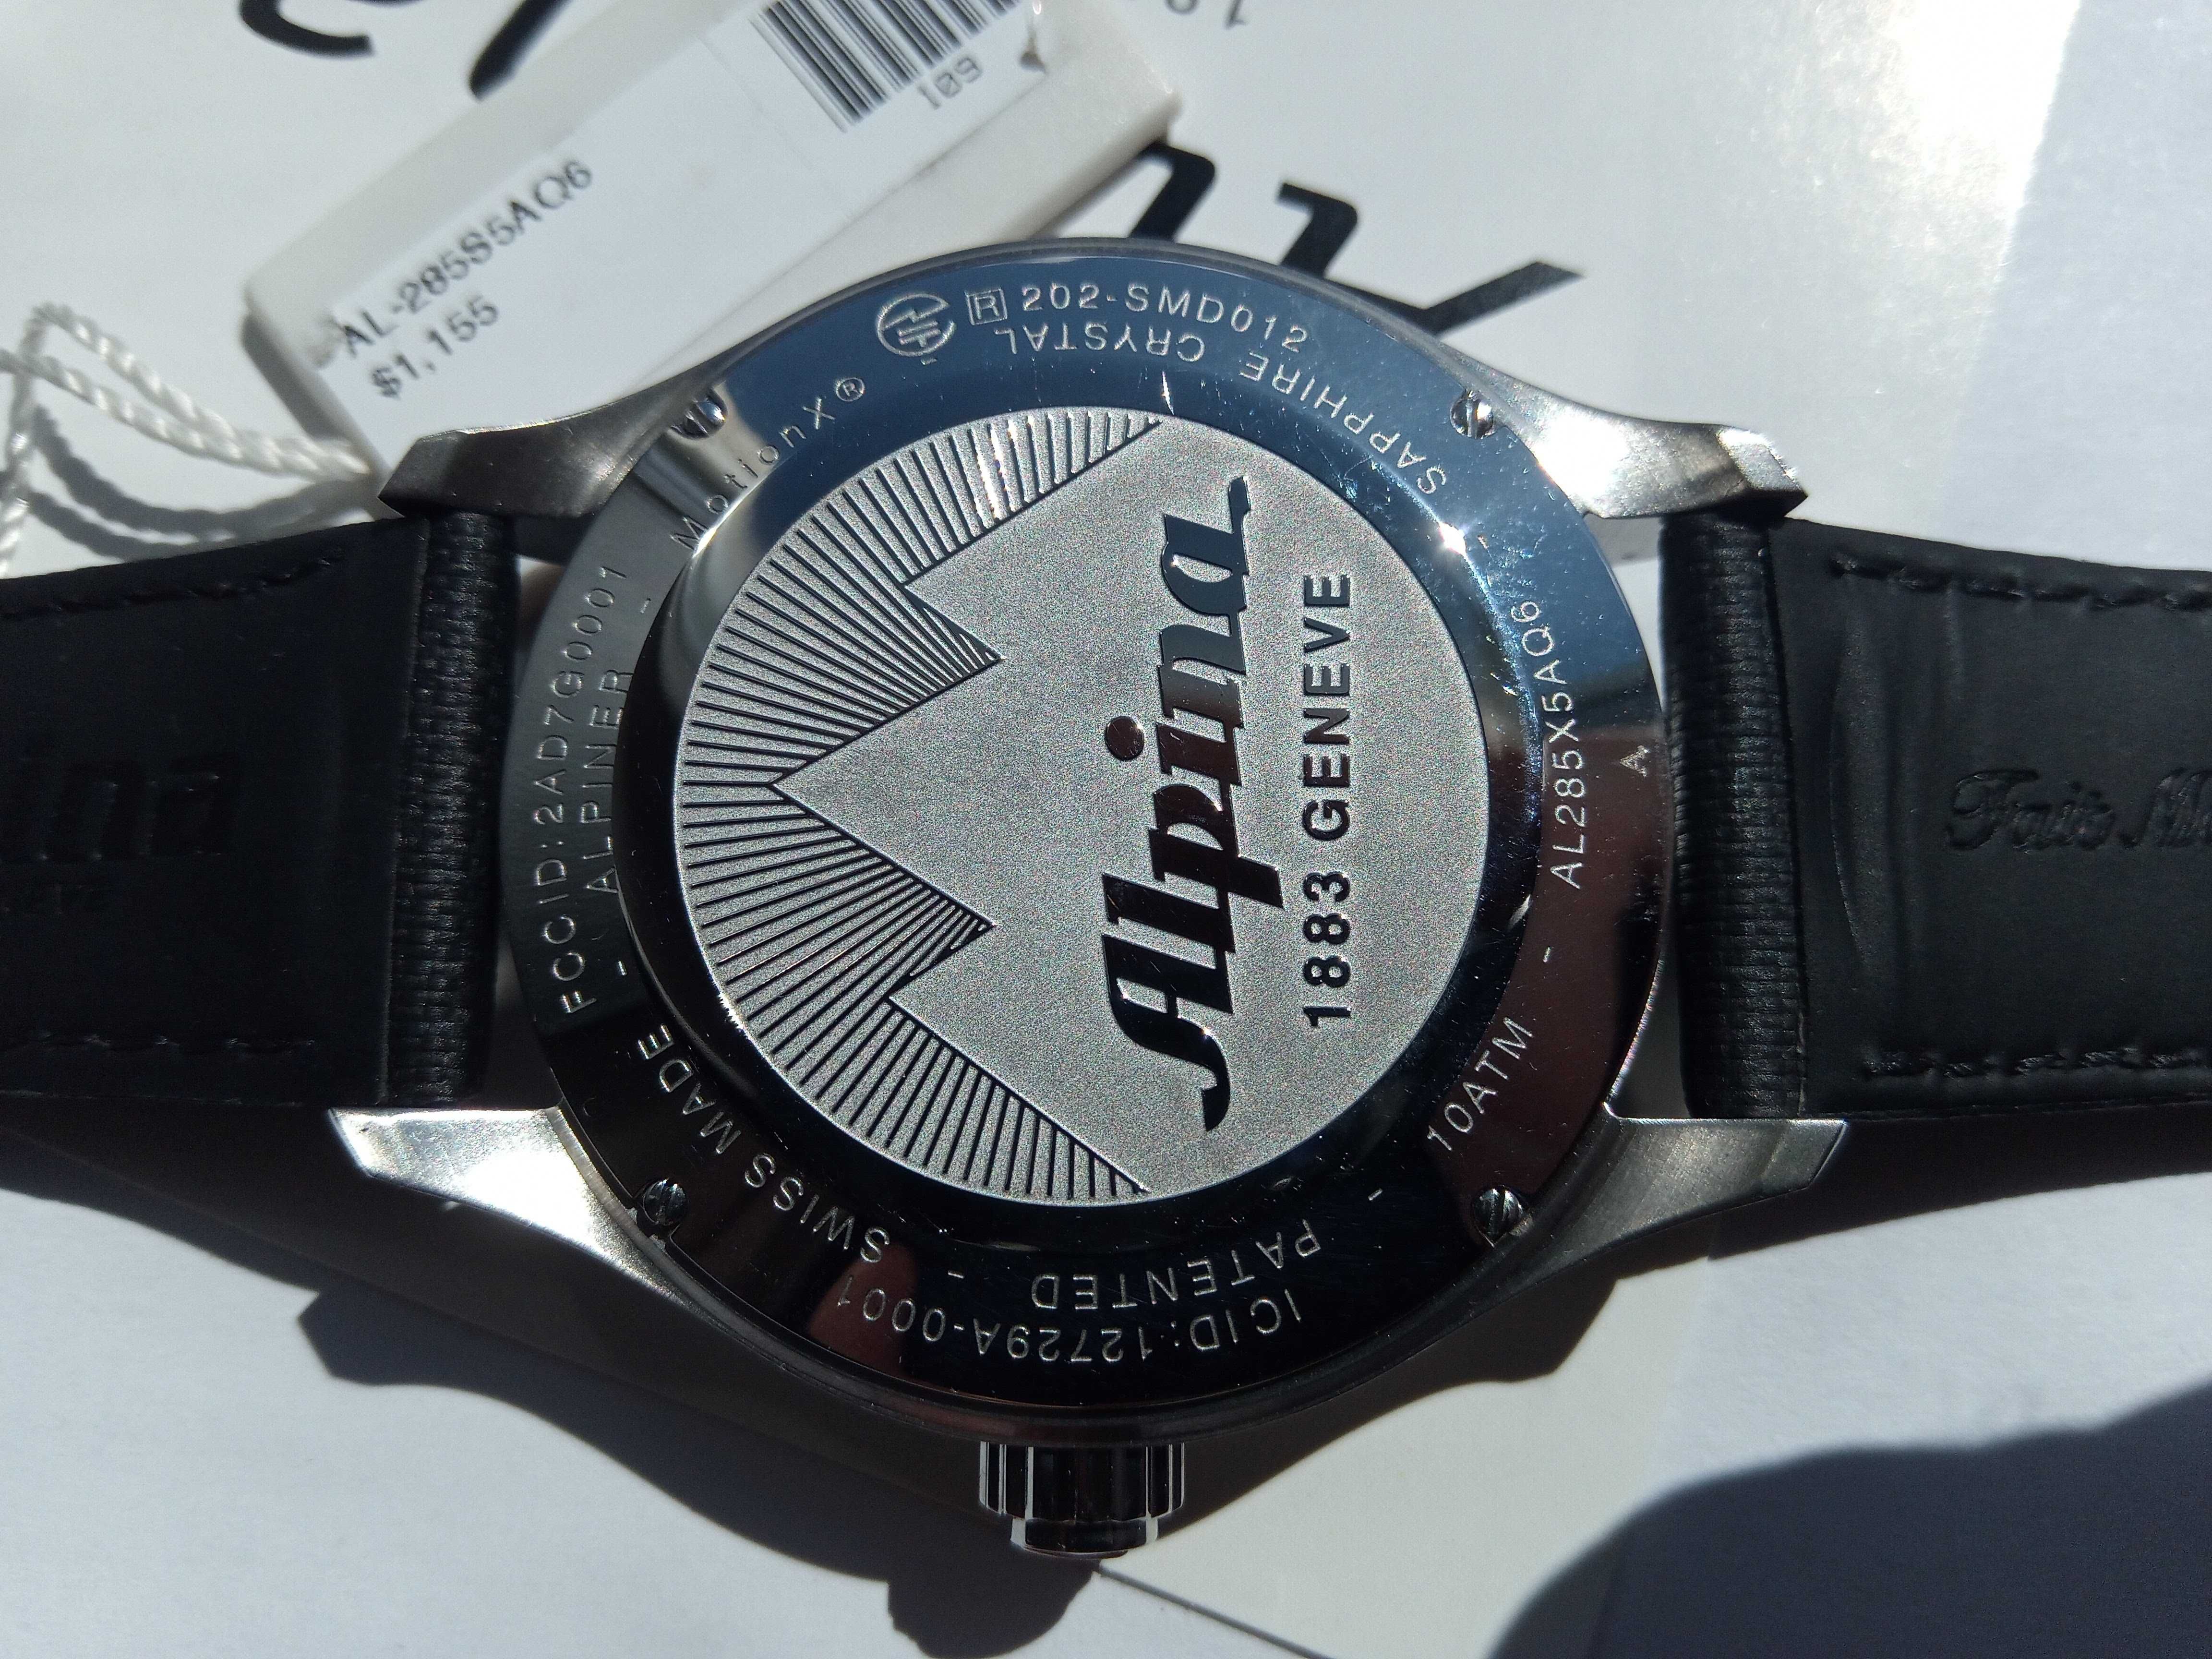 Швейцарские умные часы Alpina Horological - сапфир, Женева, РРЦ $1155